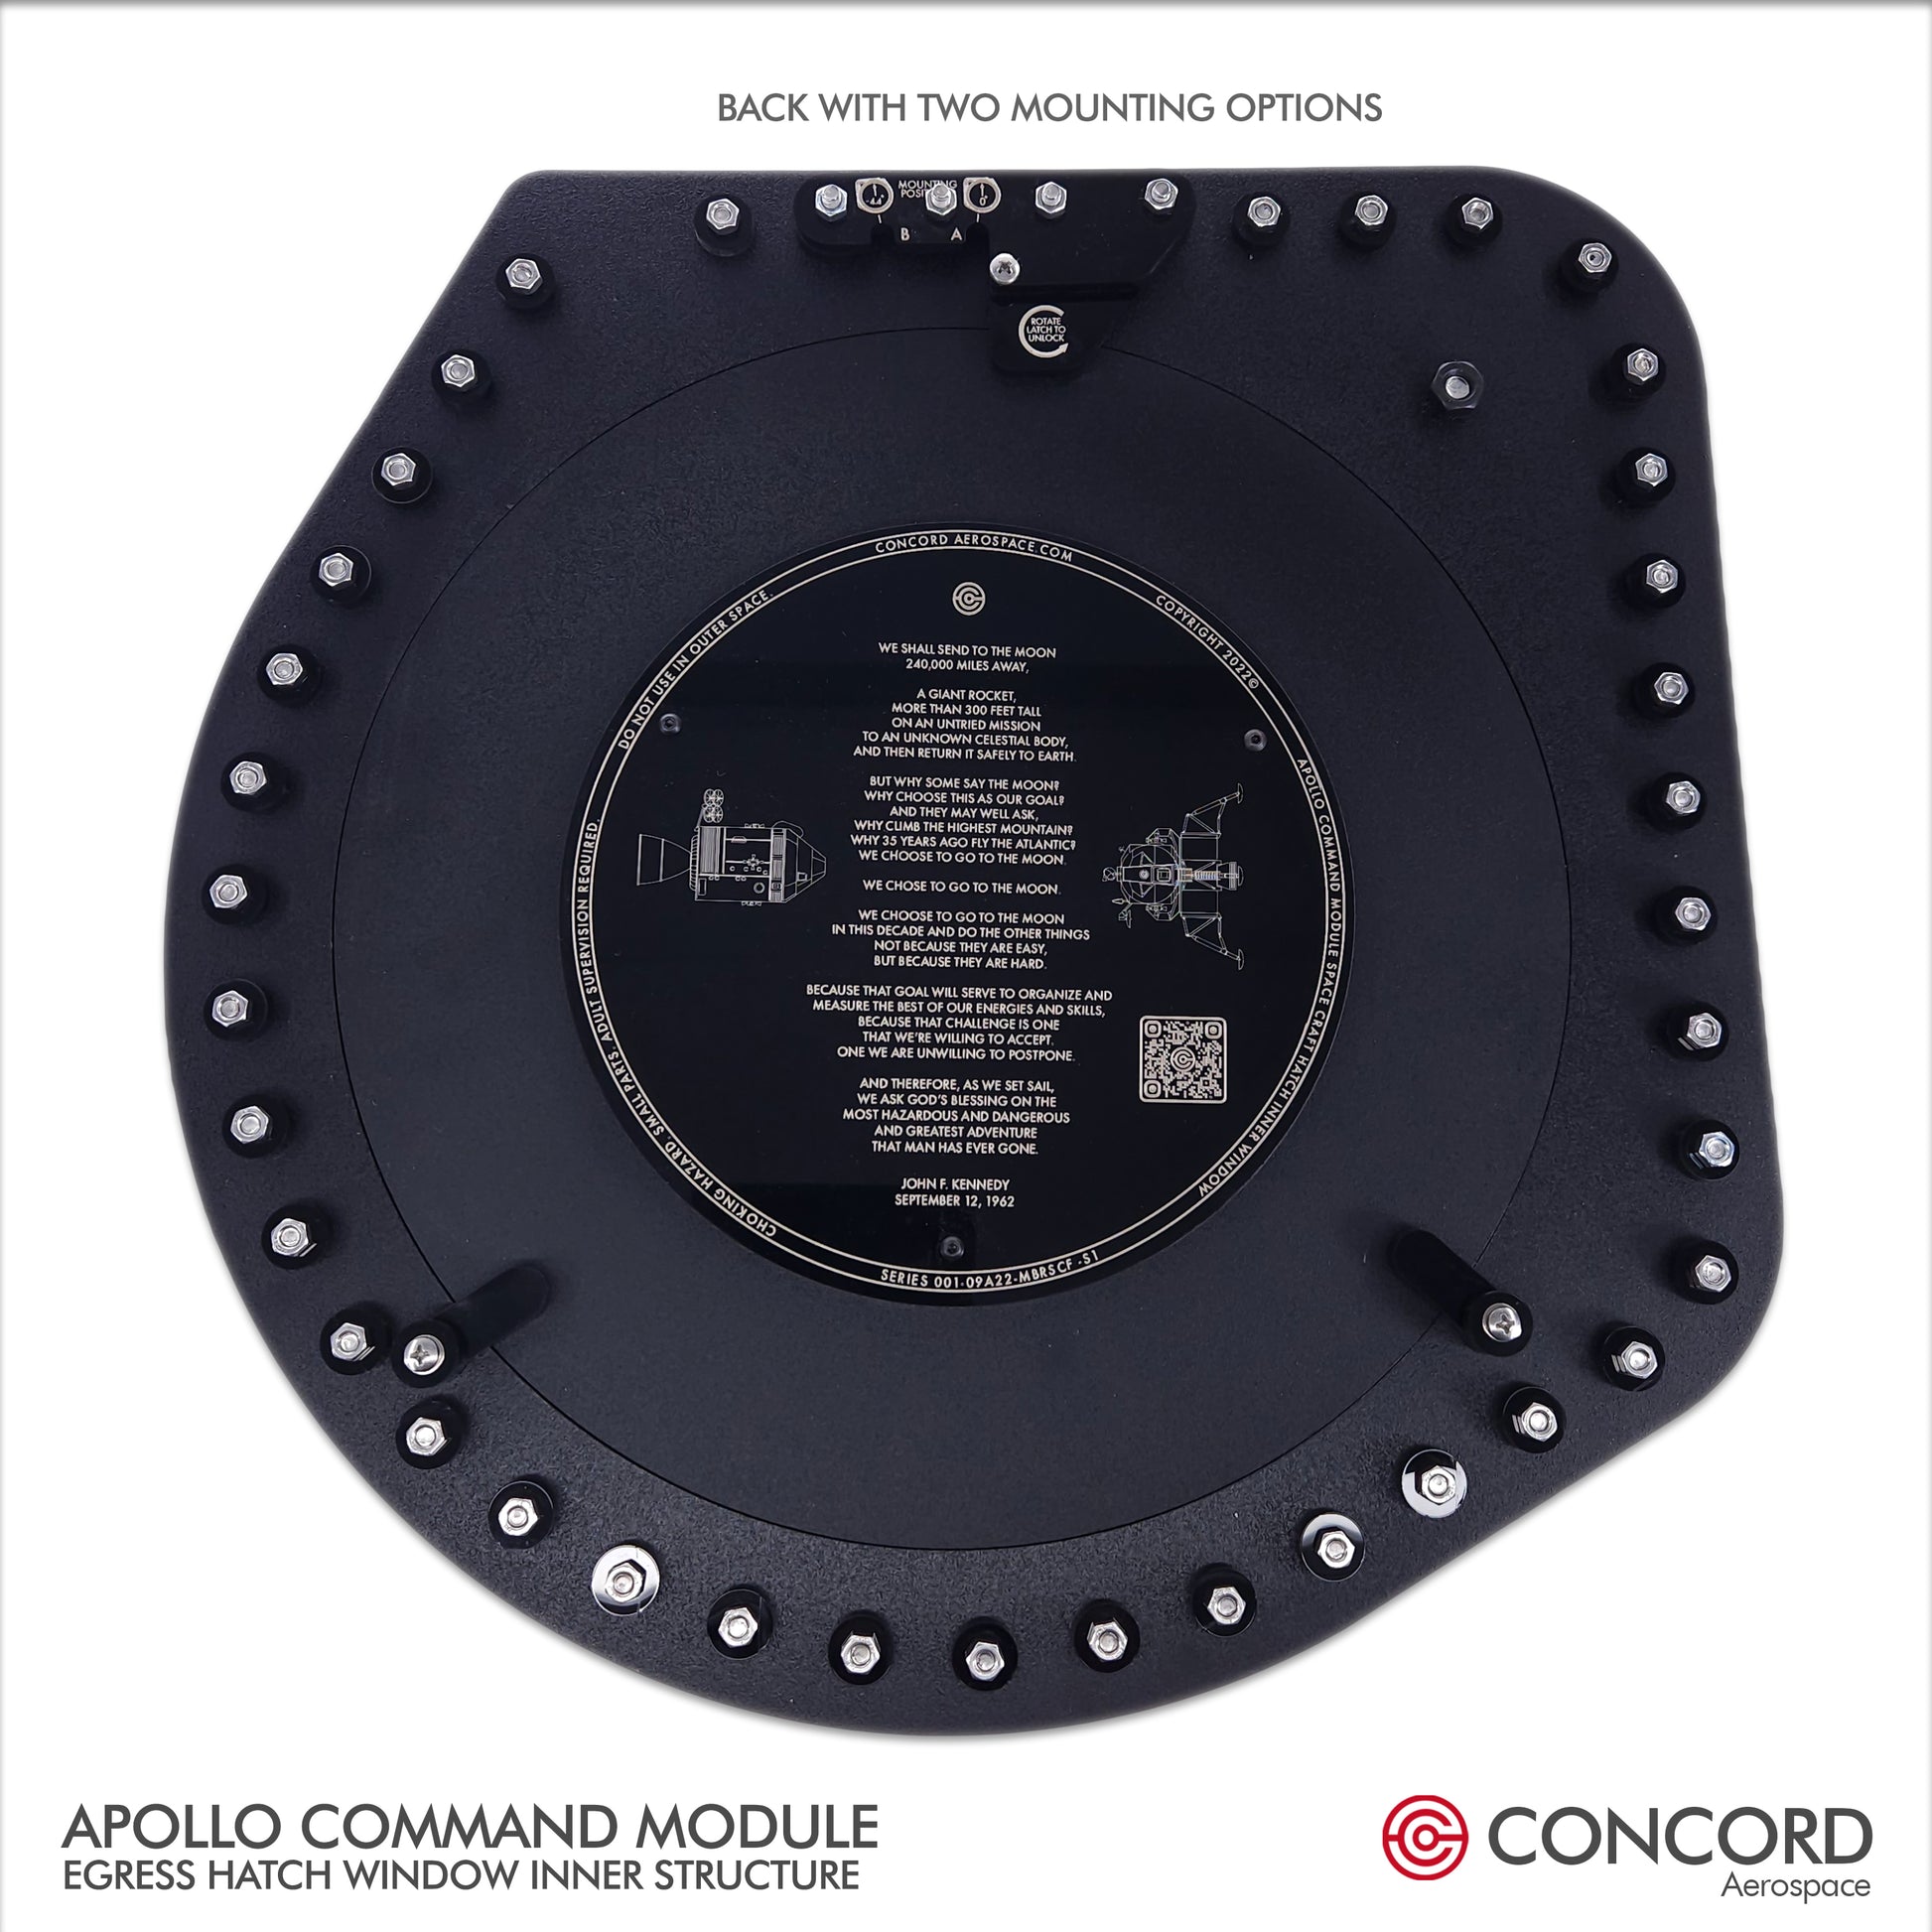 APOLLO 13 COMMAND MODULE ODYSSEY HATCH WINDOW - Concord Aerospace